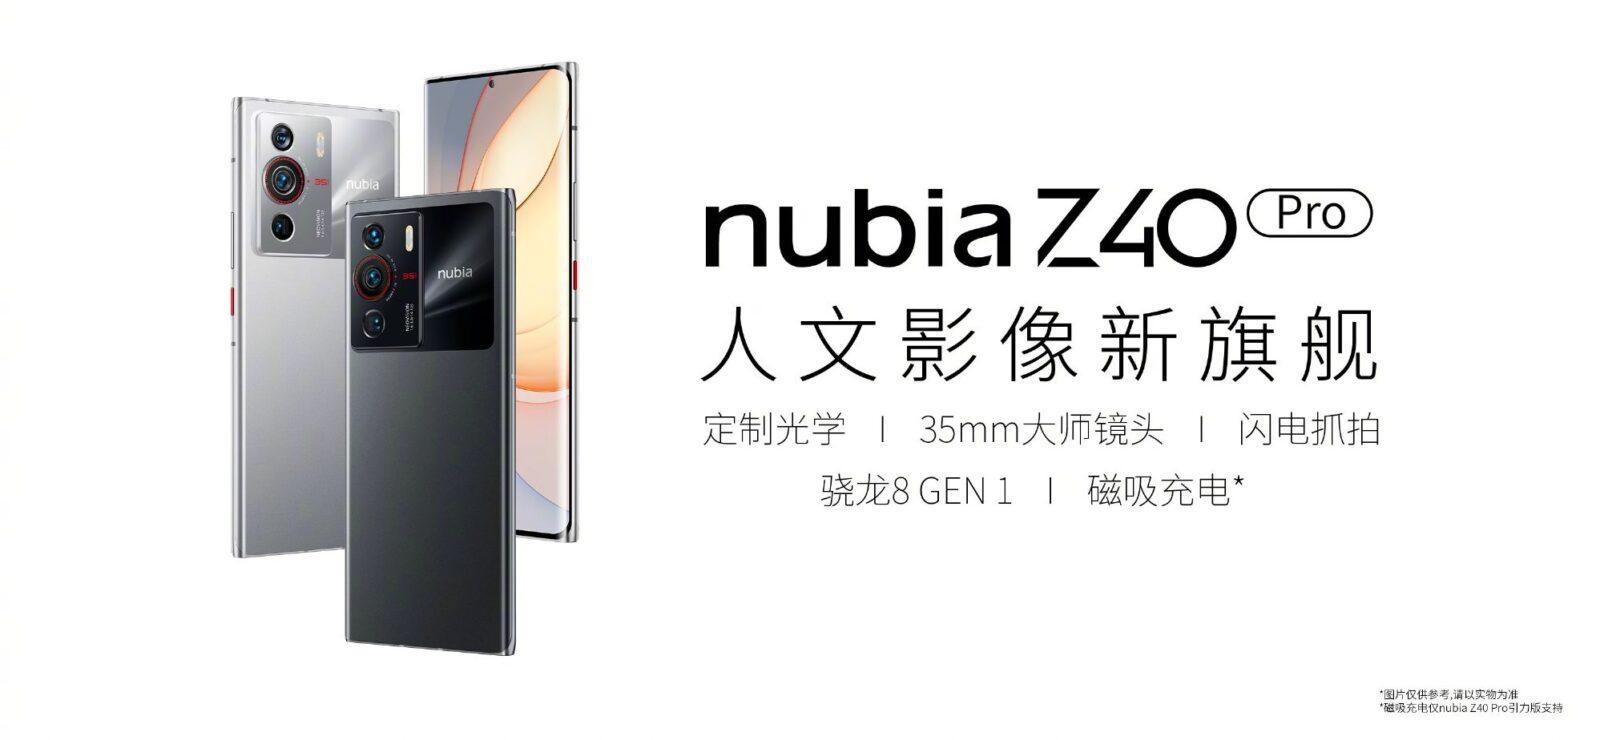 Официальные изображения смартфона Nubia Z40 Pro (Nubia Z40 Pro poster)